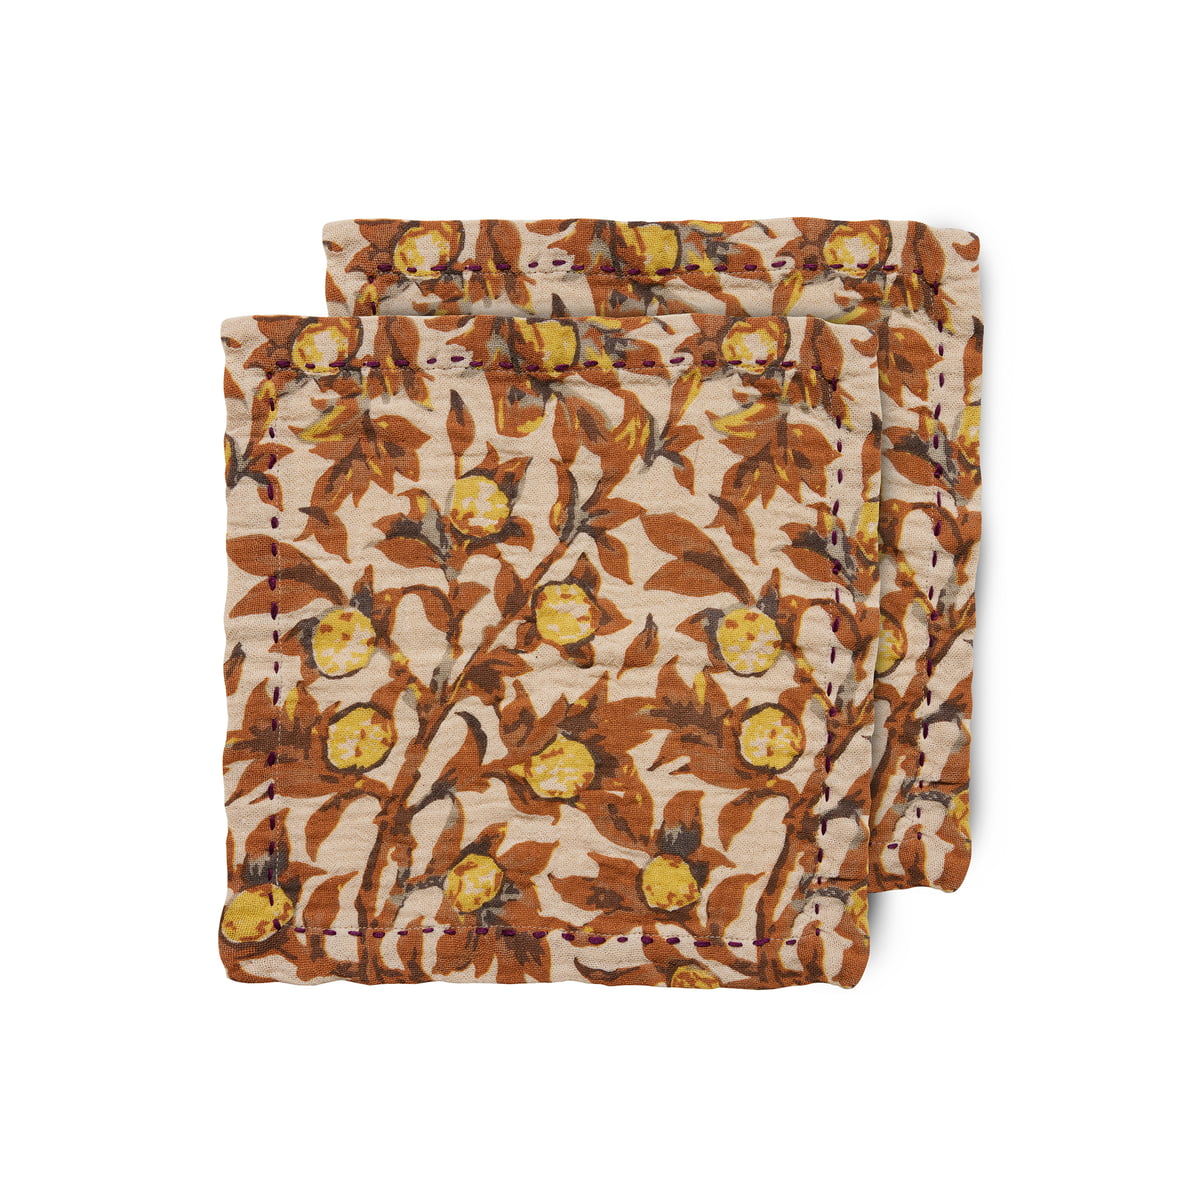 hkliving - serviettes de table en coton, 30 x 30 cm, mediterranean tangerine (lot de 2)